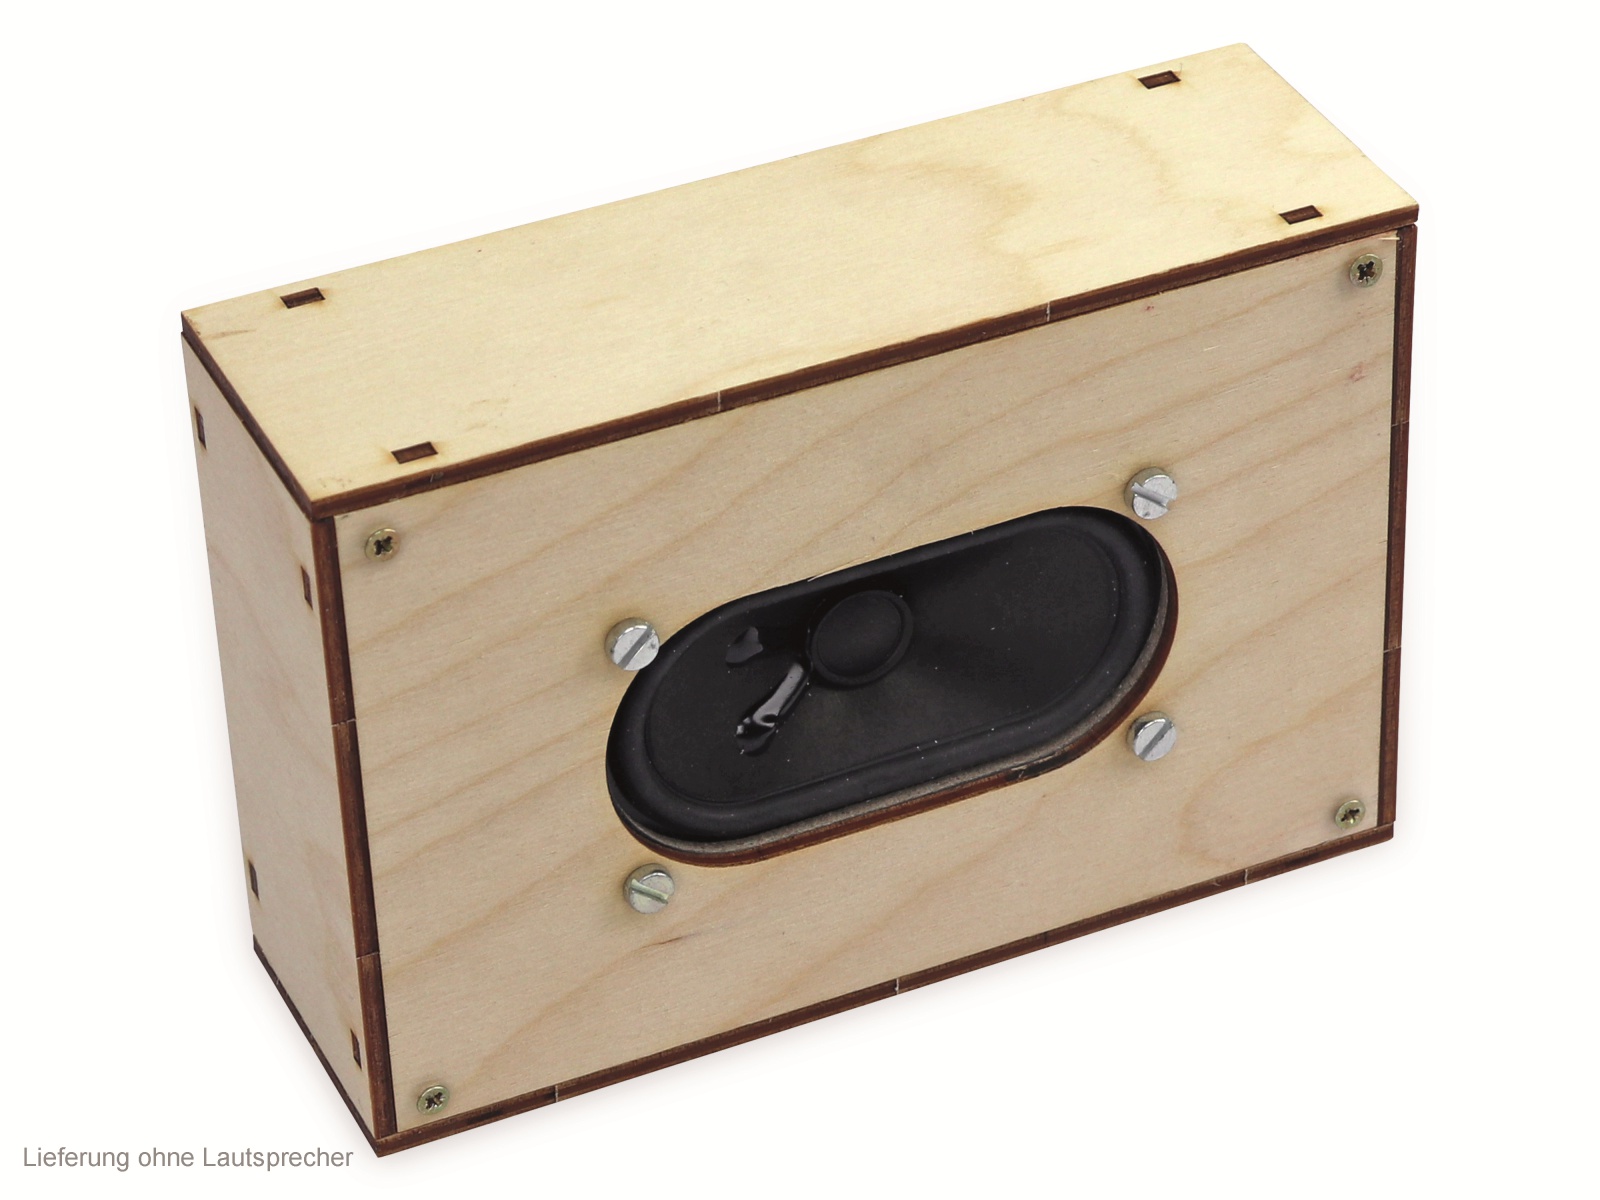 SOL-EXPERT Holzboxbausatz für Lautsprecher BN 390154, 150 x 100 x 50 mm